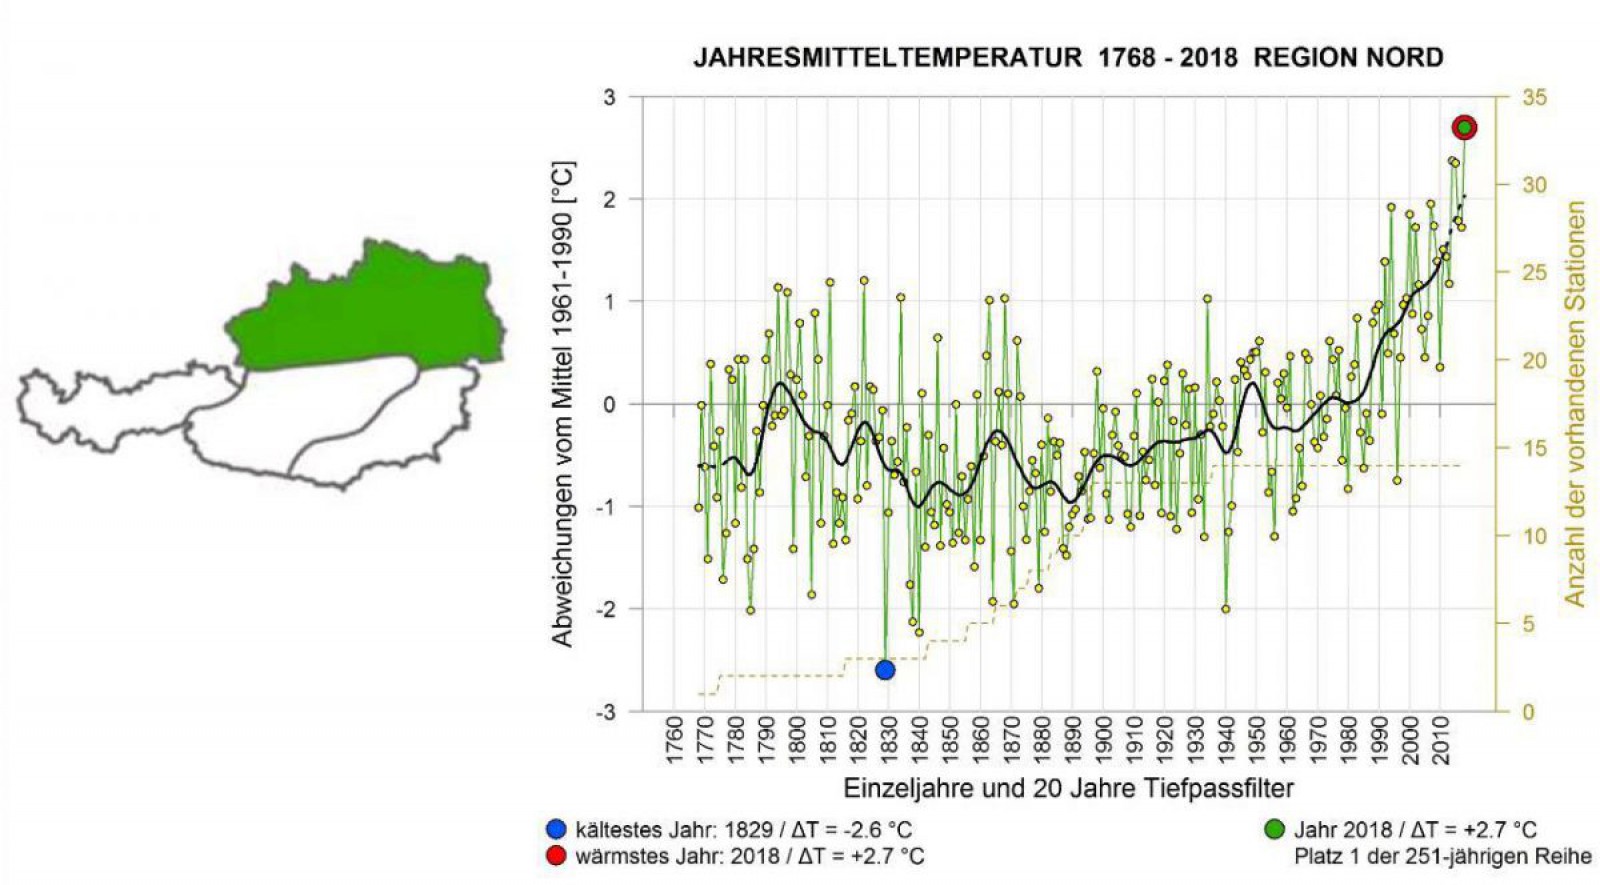 Grafik der mittleren Jahrestemperatur in NÖ von 1768 bis 2018